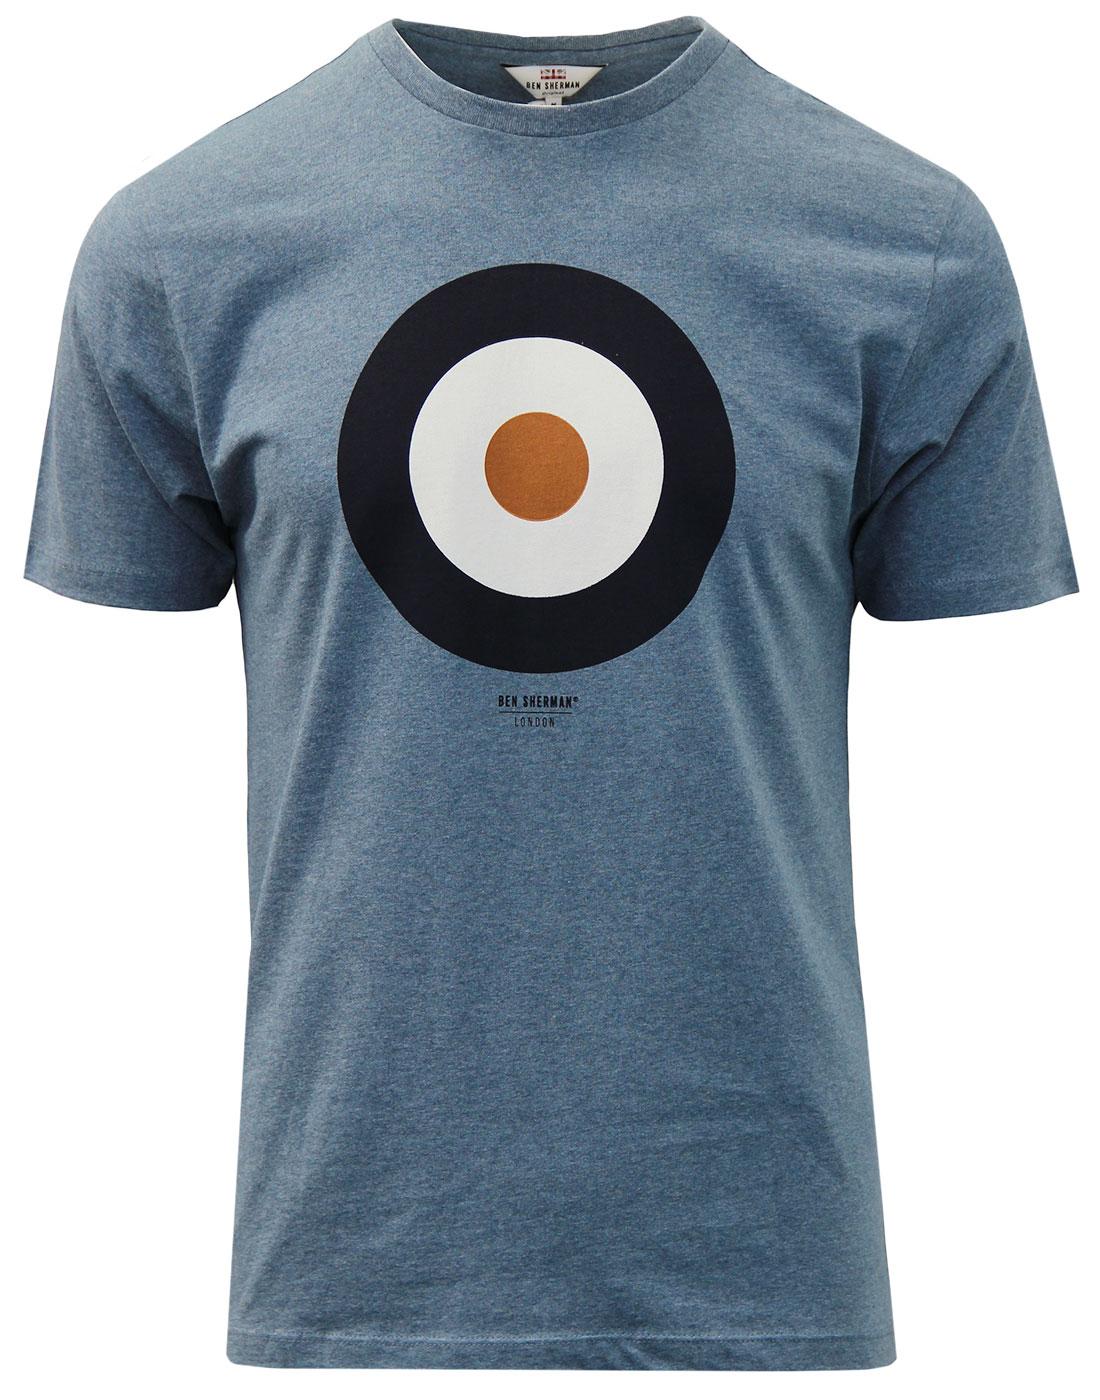 BEN SHERMAN Pop Art Mod Target T-Shirt BLUE SHADOW